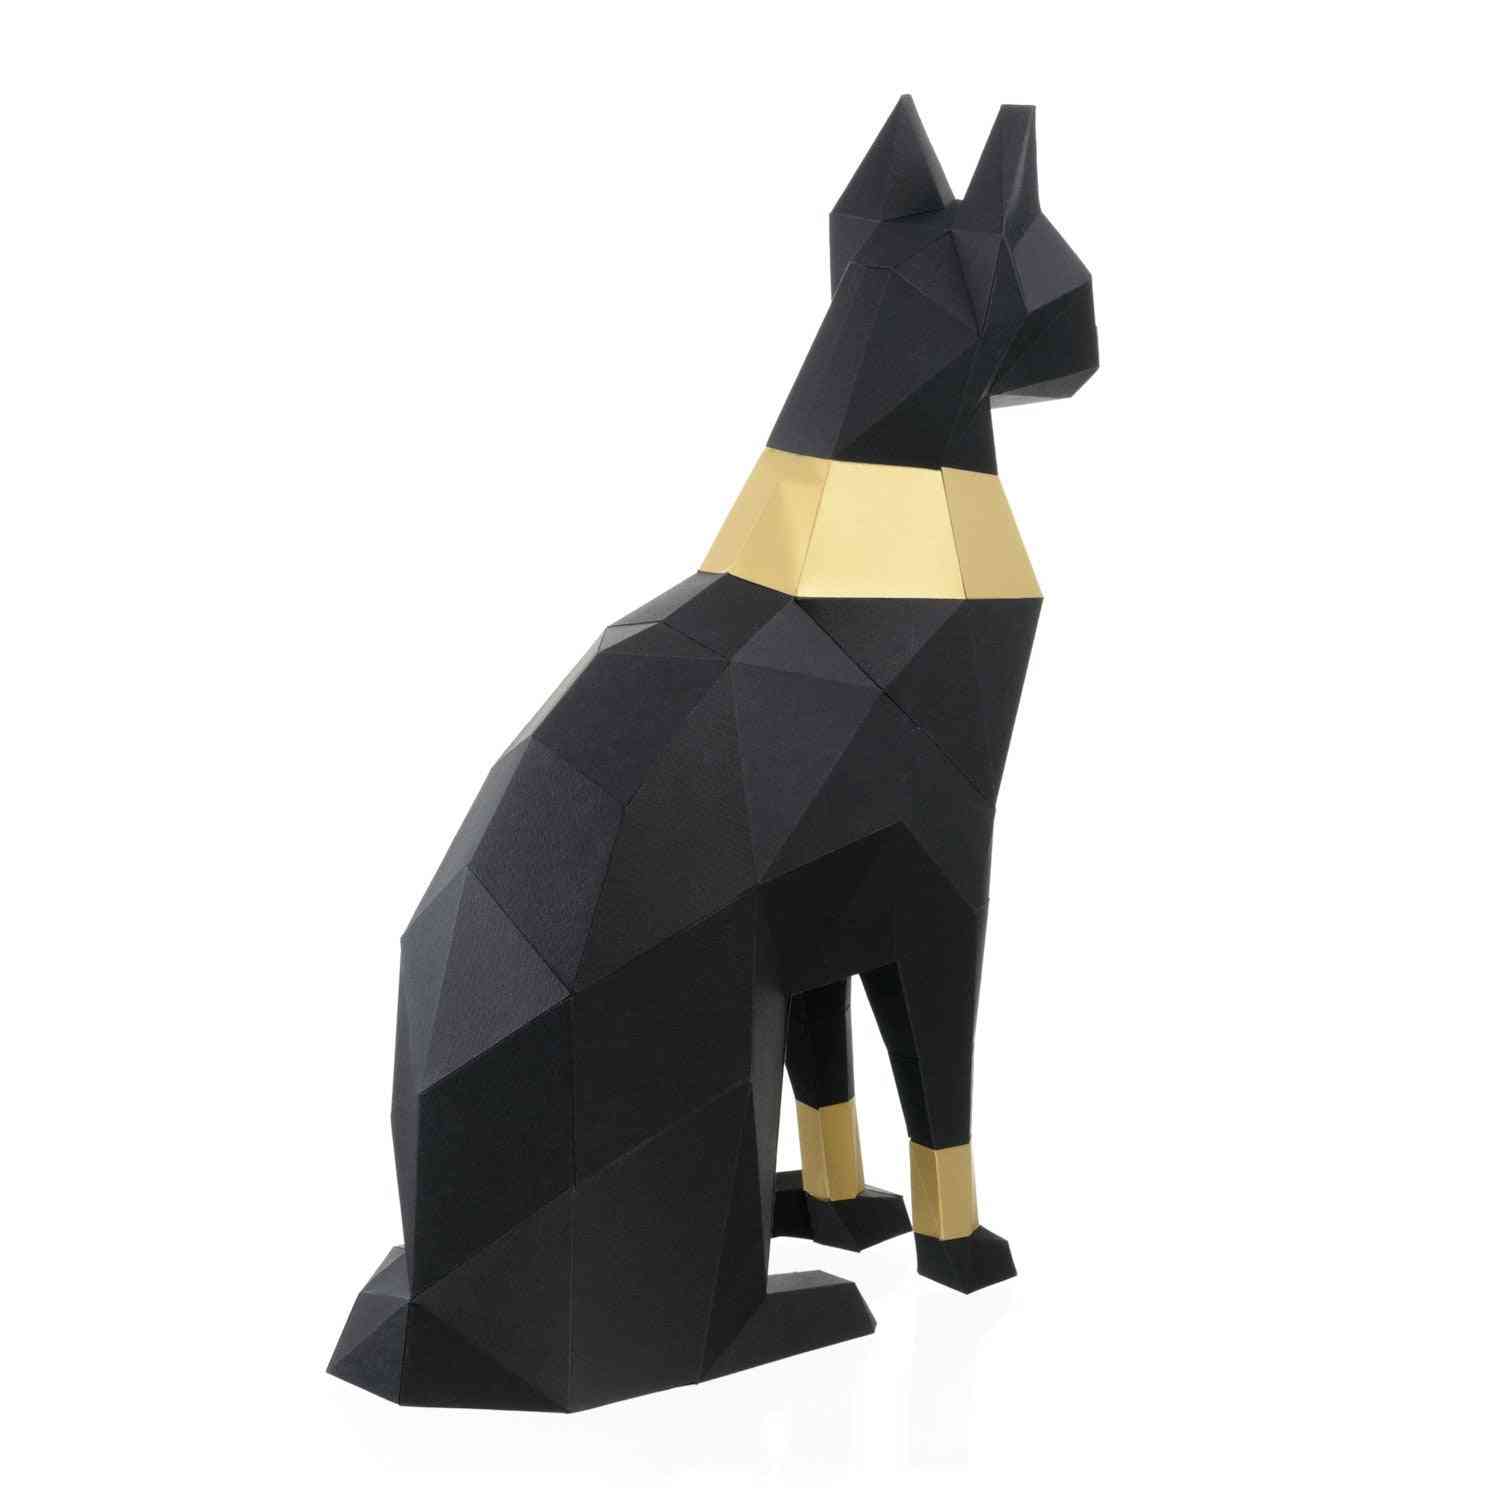 Mačka bastet egypt 3d papierový model zviera papercraft akčná figúrka